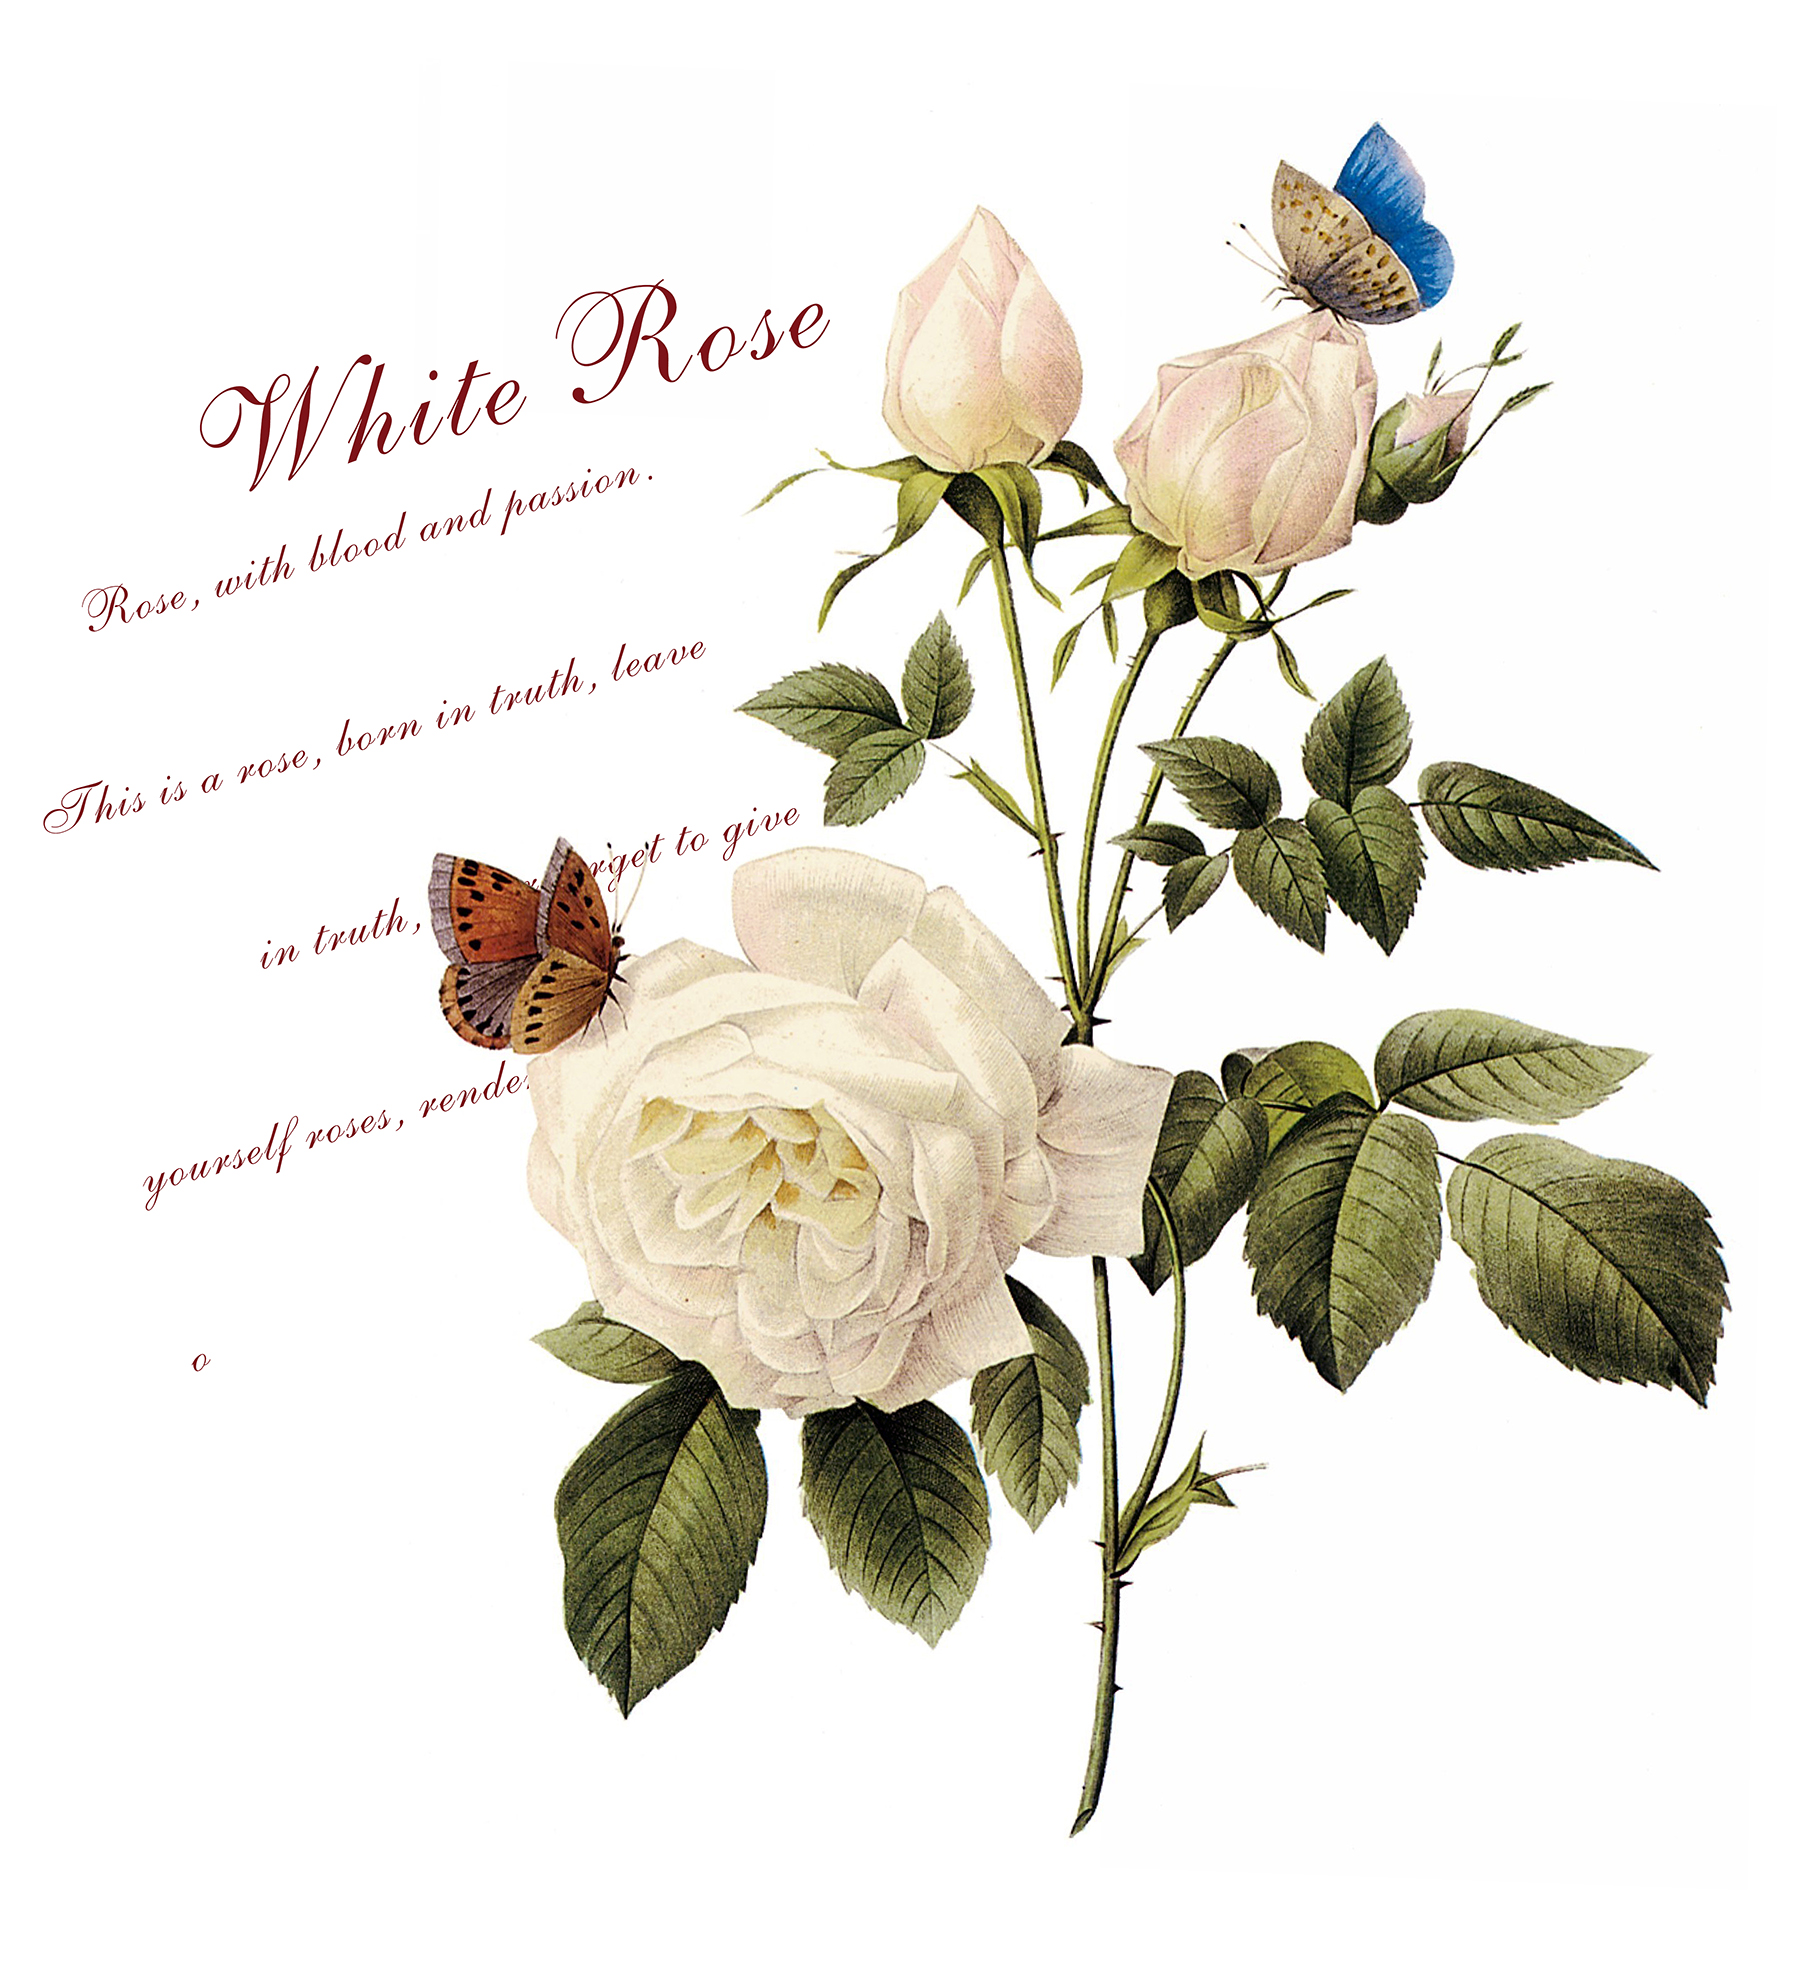 白玫瑰   耐刮板,肤感打印,艺术玻璃,UV打印,平开衣柜门,整体衣柜,高光系列 白玫瑰 玫瑰 手绘 蝴蝶 英文